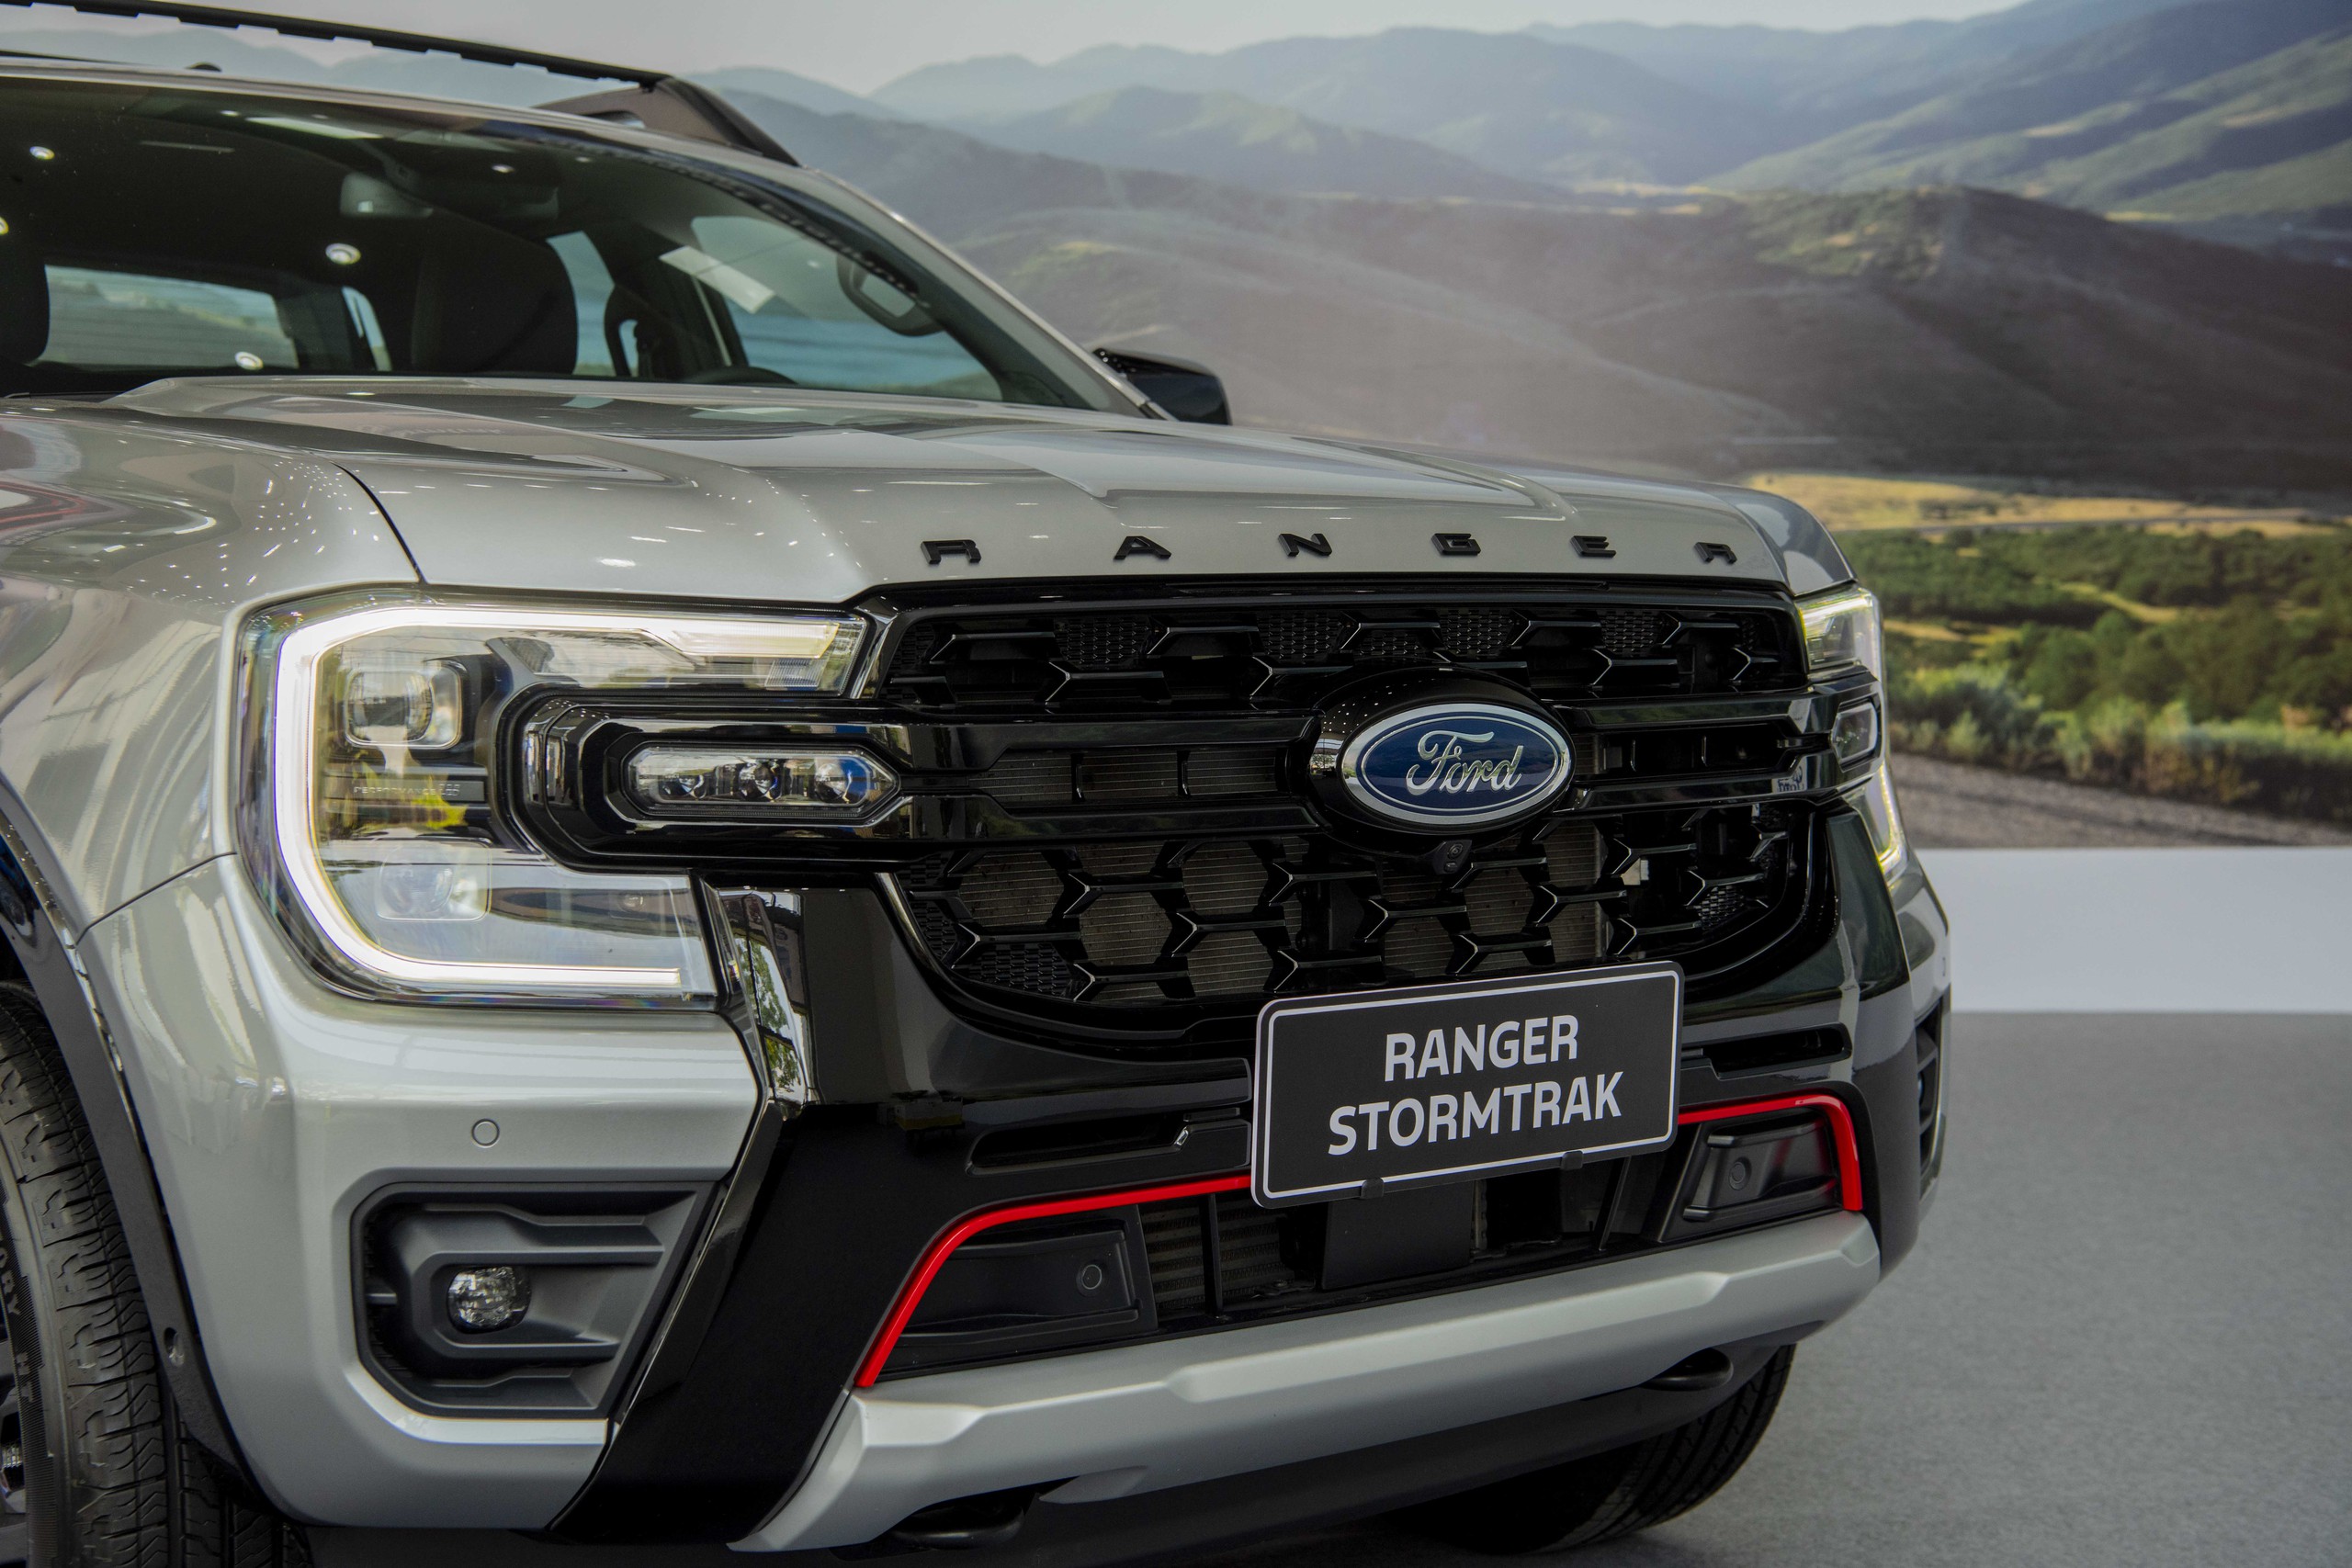 Công bố giá Ford Everest Platinum và Ranger Stormtrak: Từ 1,039 tỷ đồng, thiết kế mới cho khách hàng Việt- Ảnh 8.